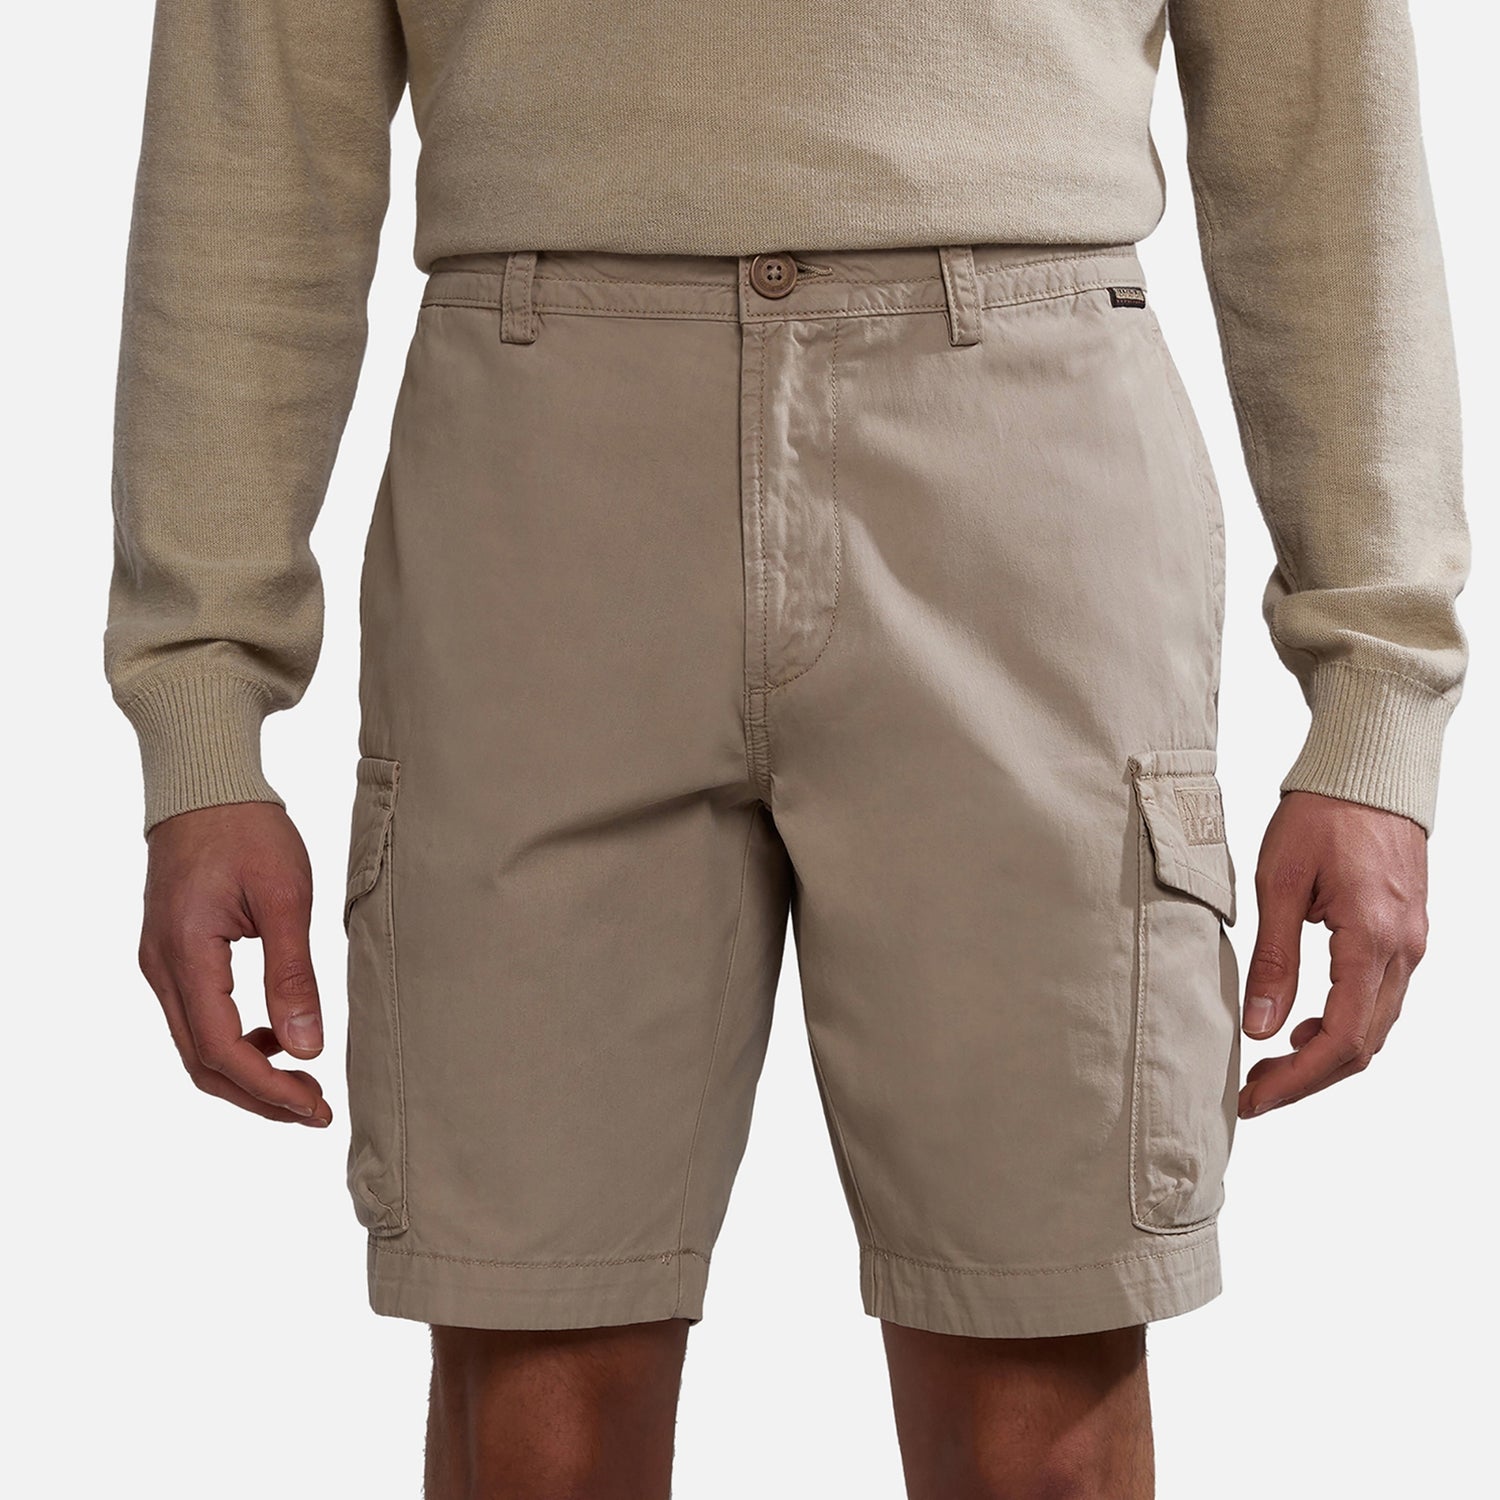 Napapijri Deline Cotton-Blend Cargo Shorts - W30